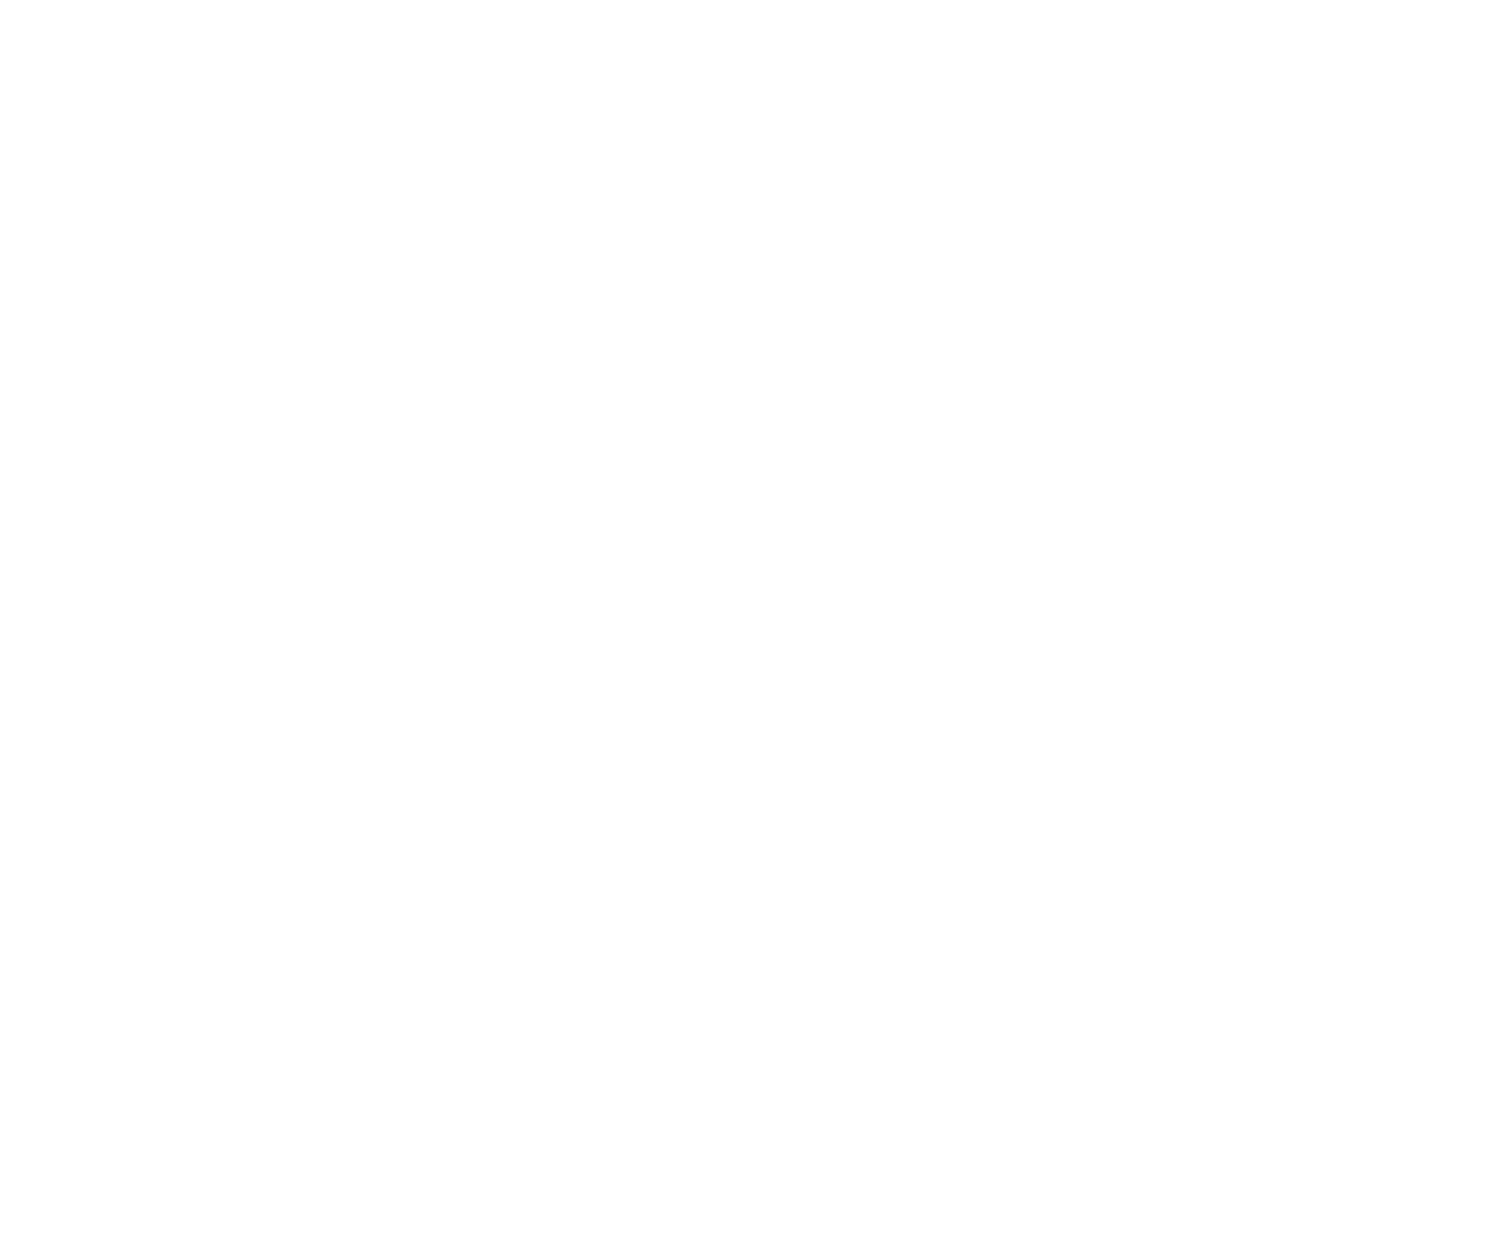 PANACHE - Bespoke Memories